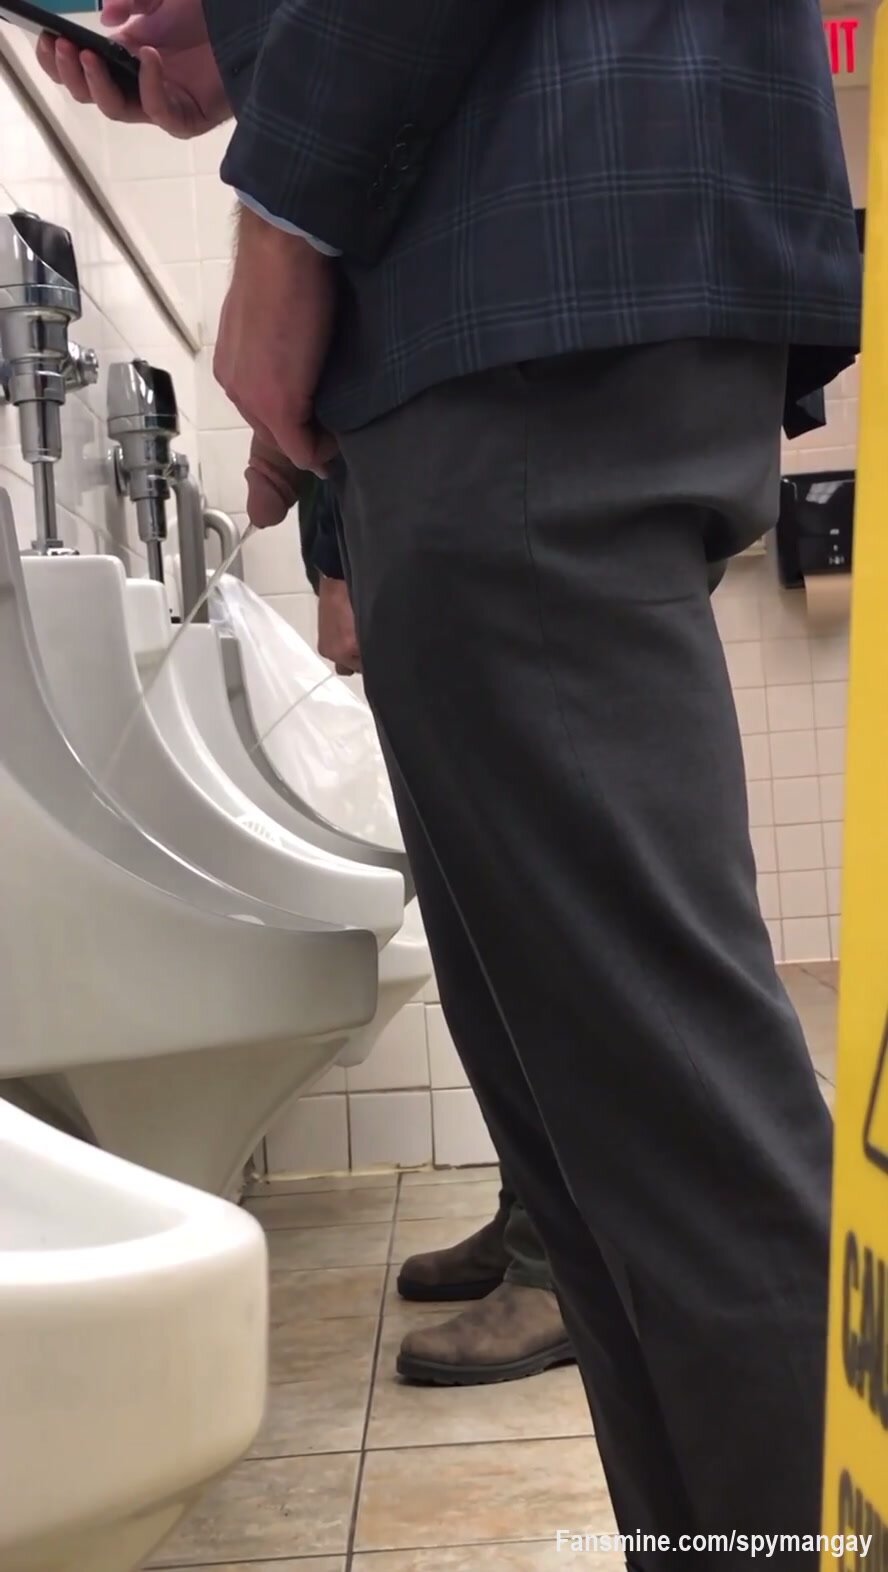 spy guy in toilet - video 35